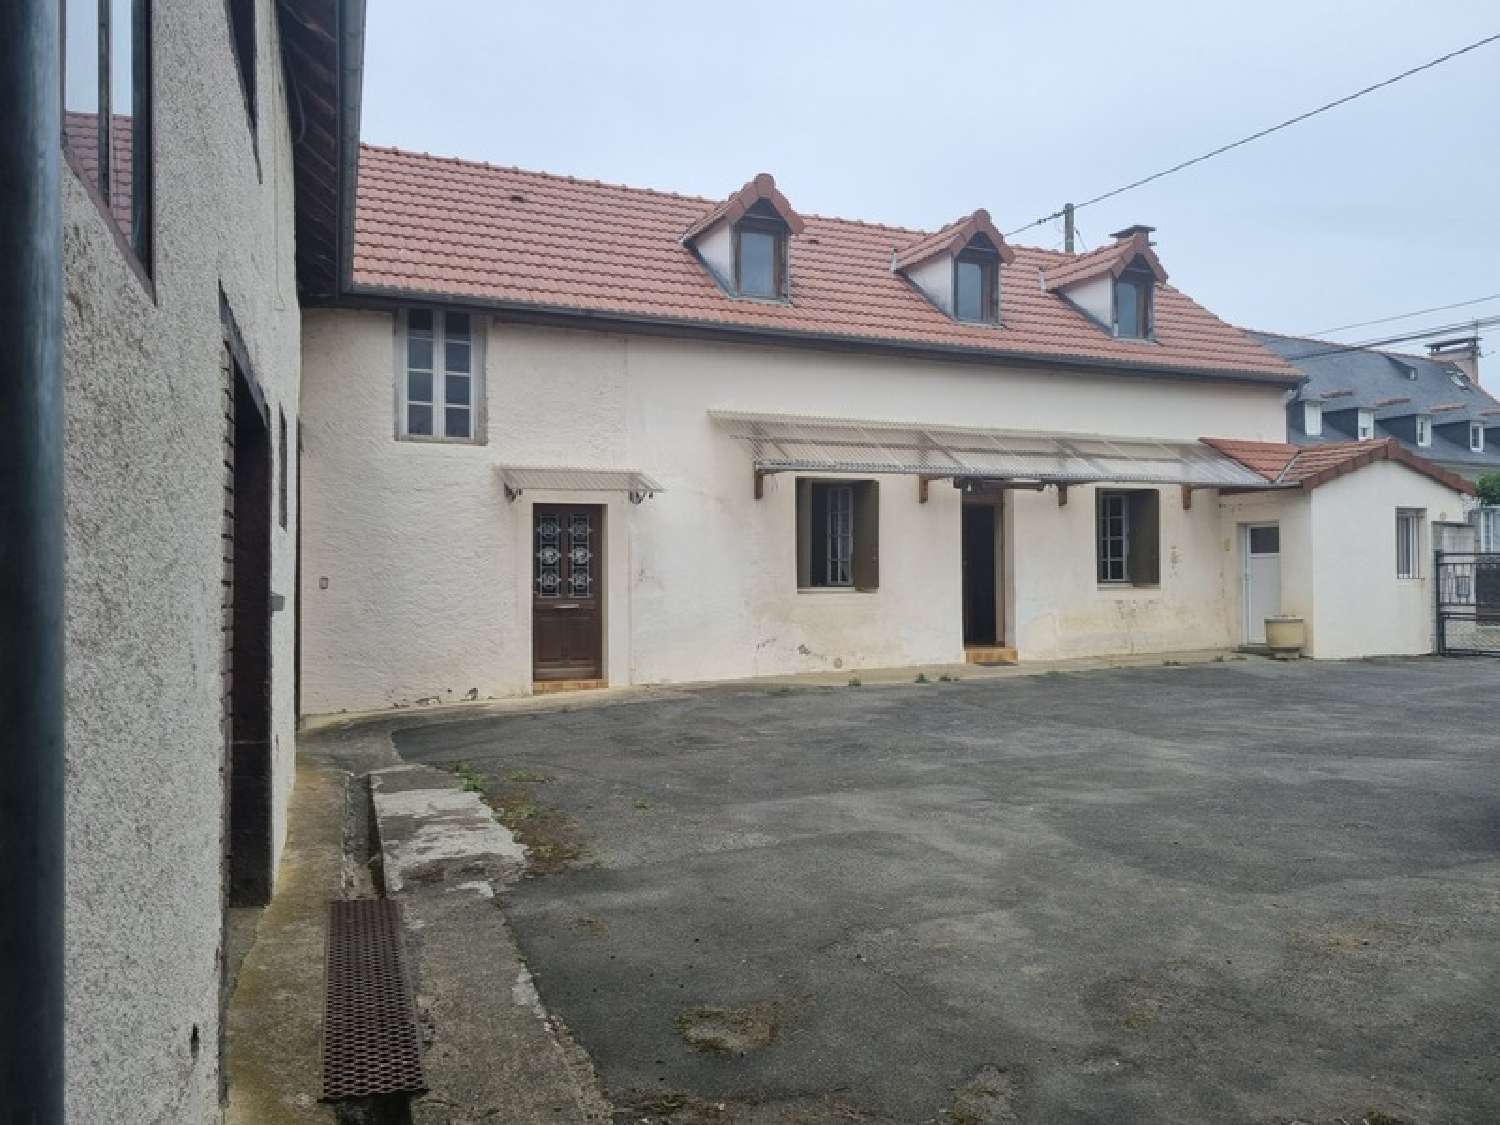  à vendre maison de village Allier Hautes-Pyrénées 1